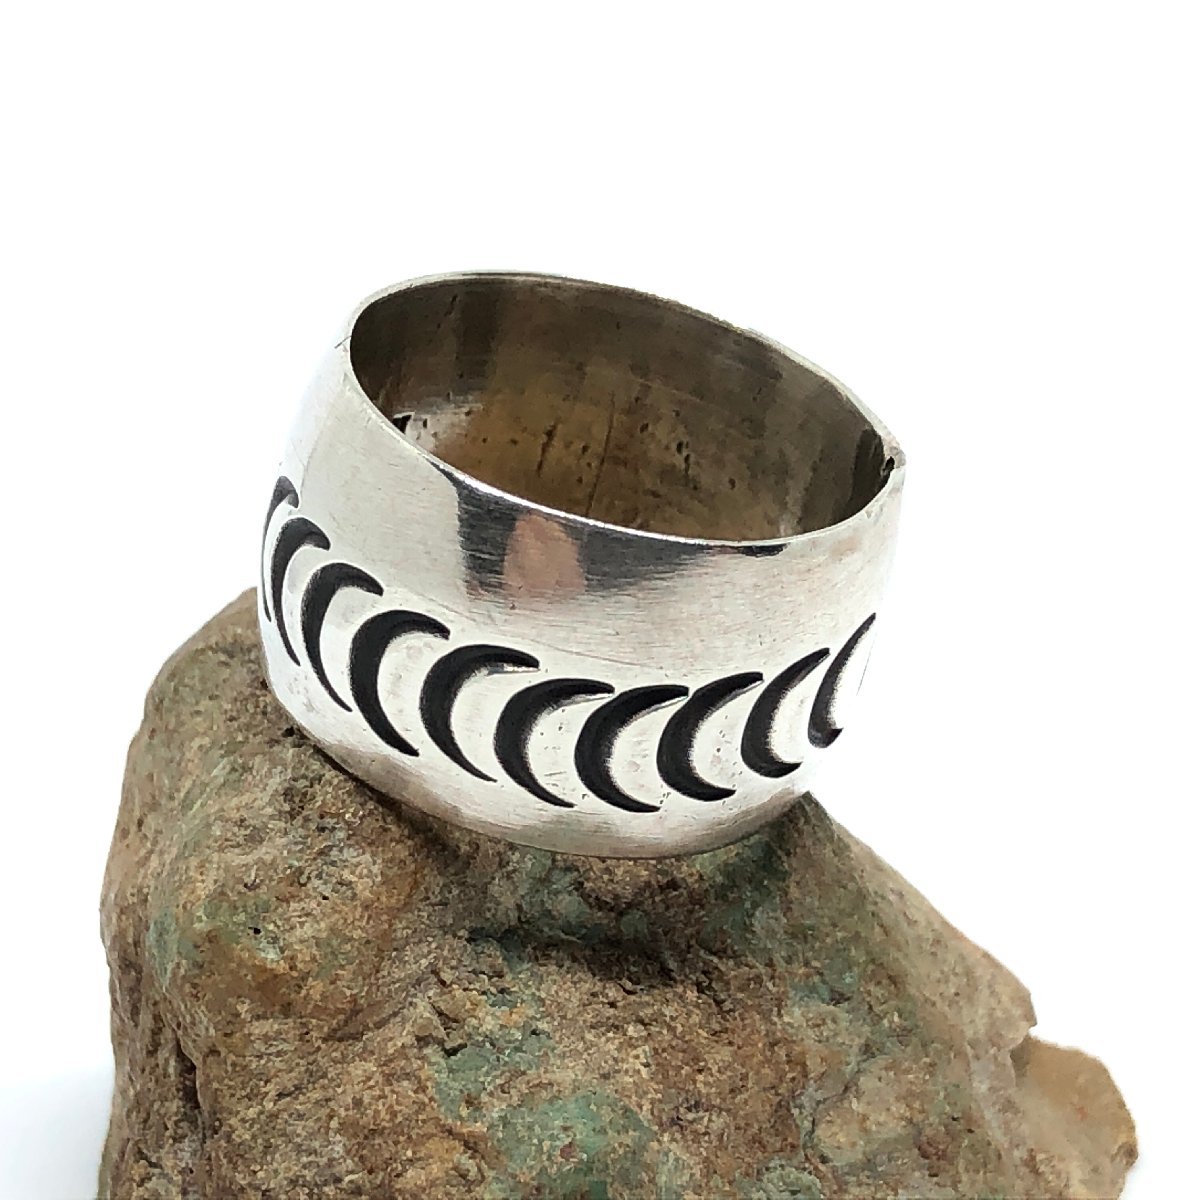  серебряное кольцо индеец ювелирные изделия кольцо серебряный аксессуары кольцо 15.5 номер 205